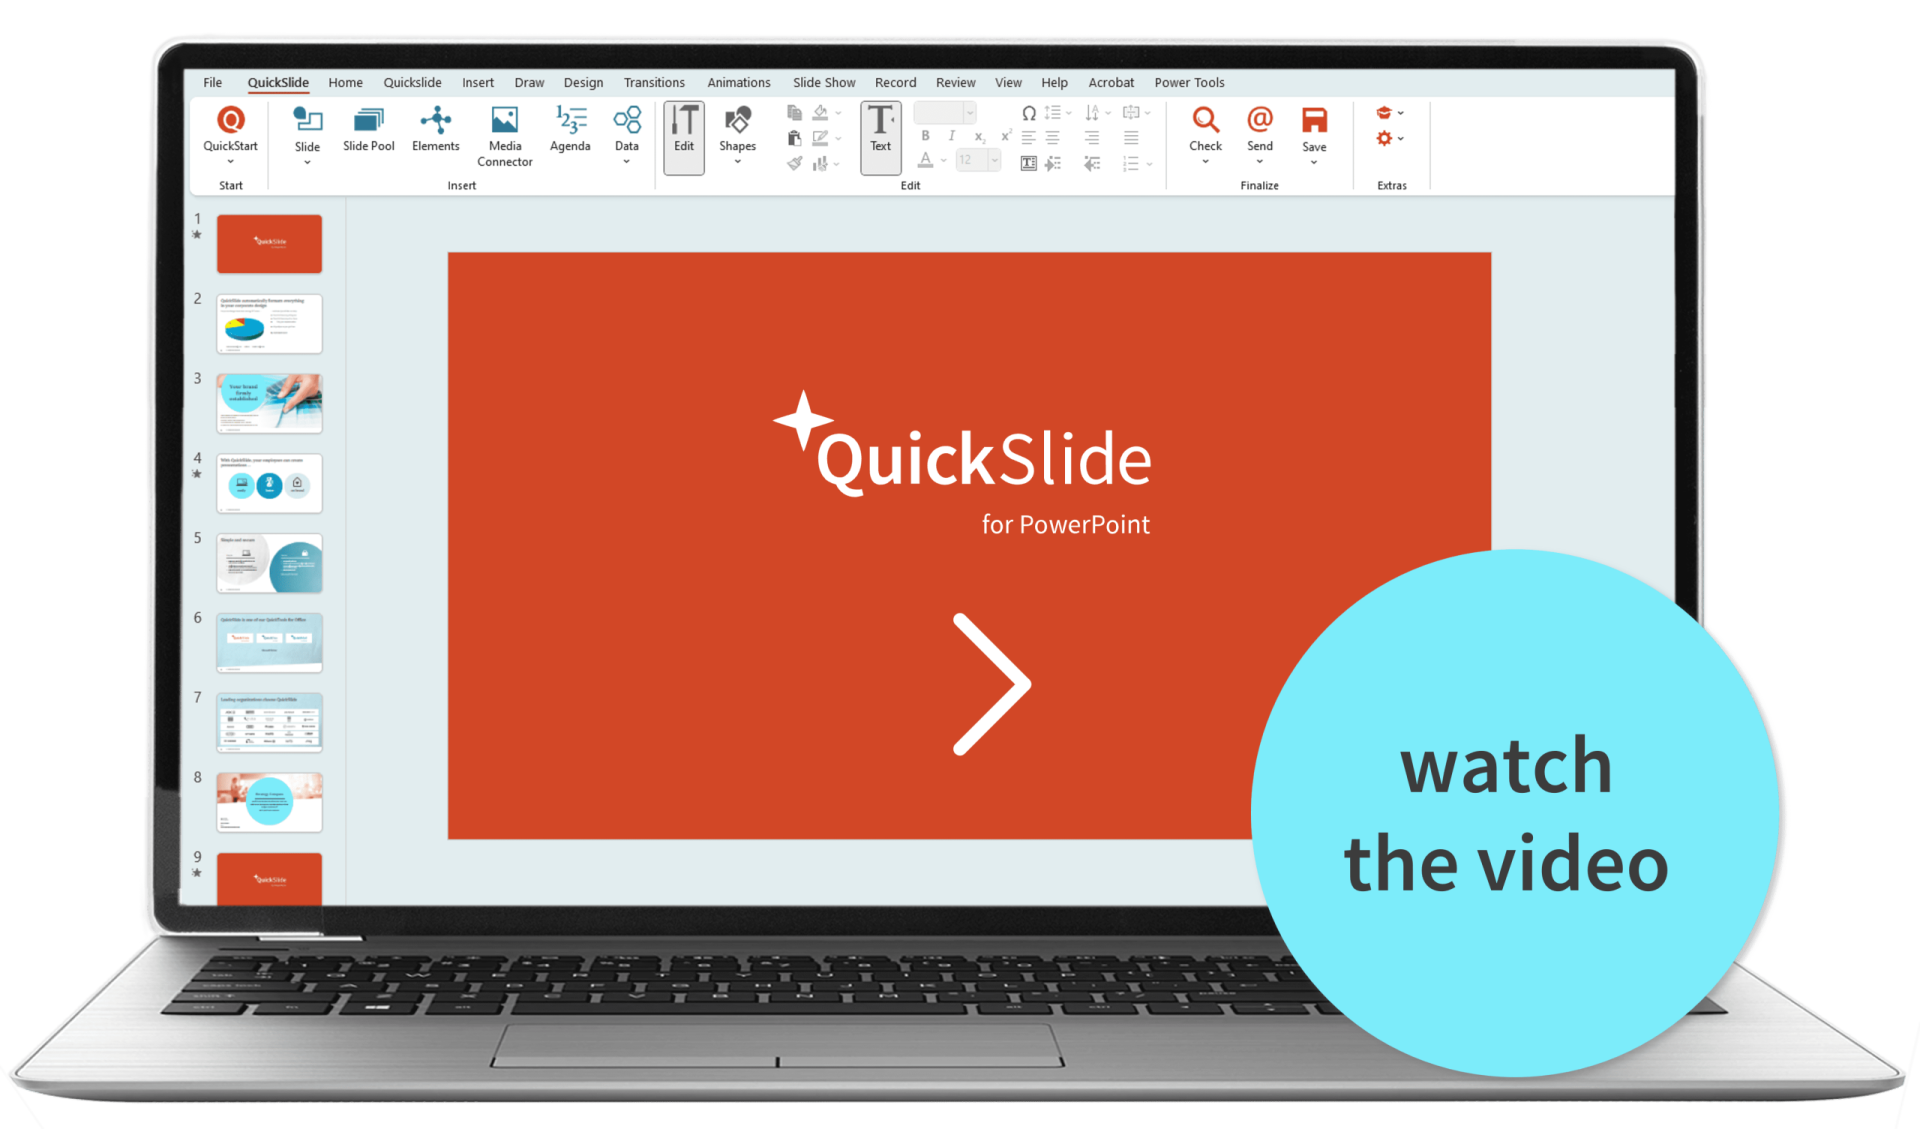 QuickSlide Video Startscreen